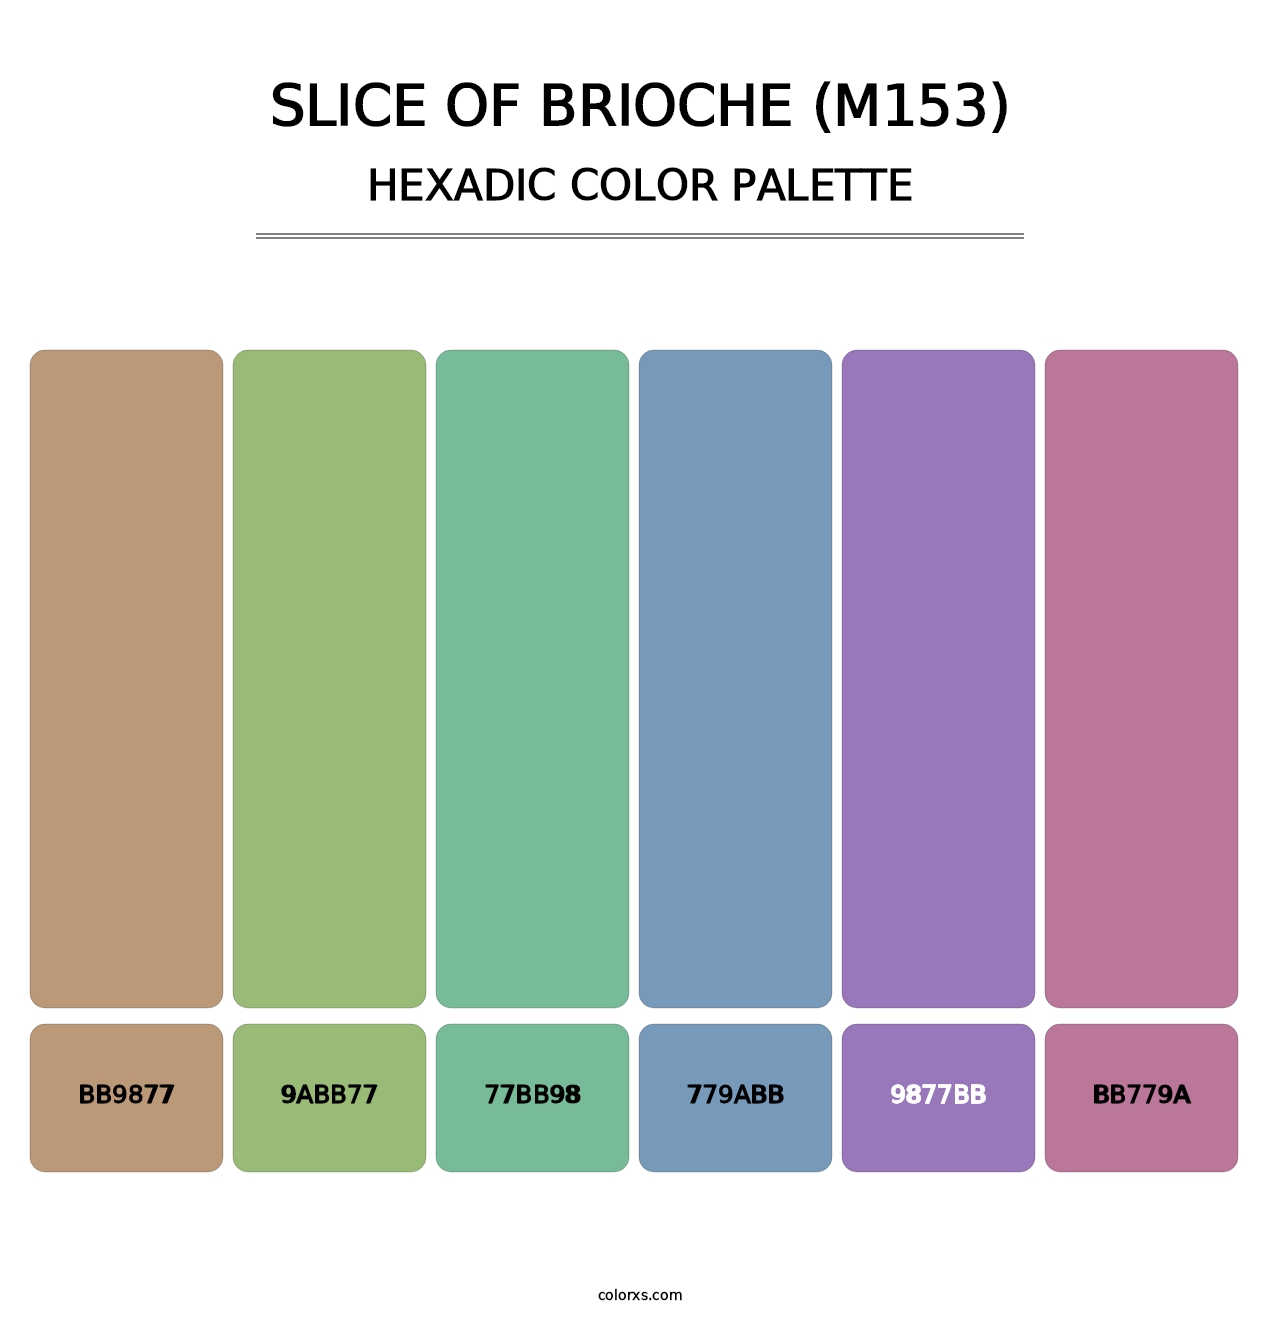 Slice of Brioche (M153) - Hexadic Color Palette